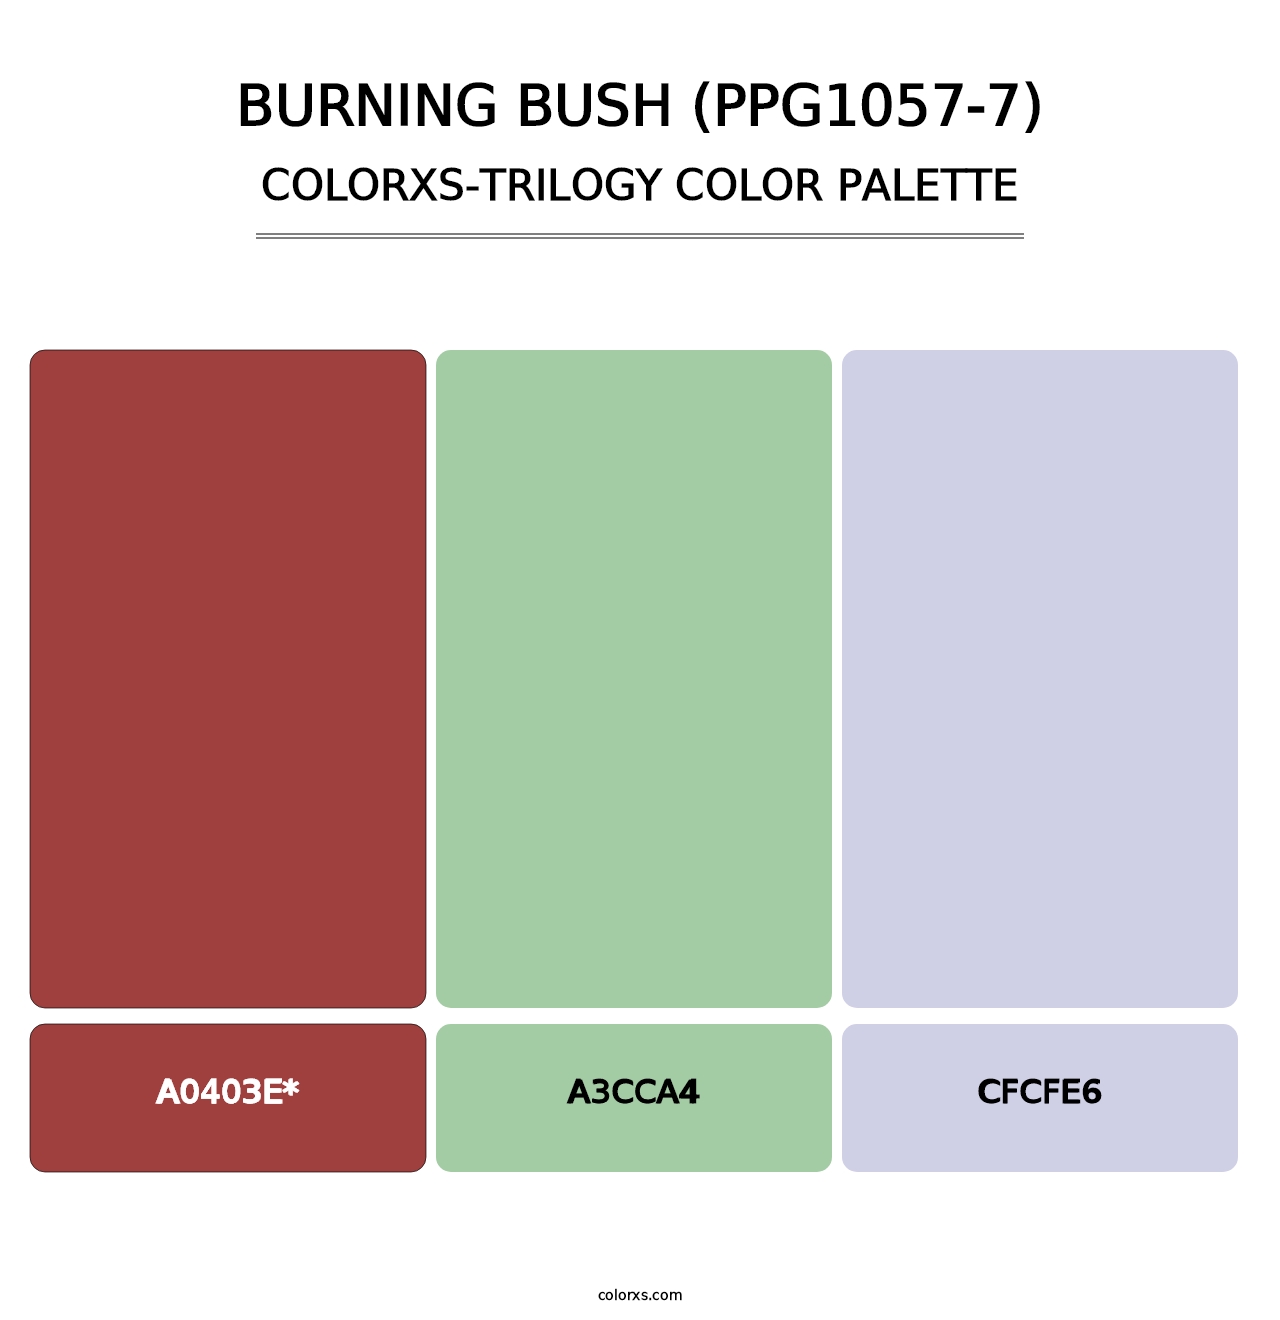 Burning Bush (PPG1057-7) - Colorxs Trilogy Palette